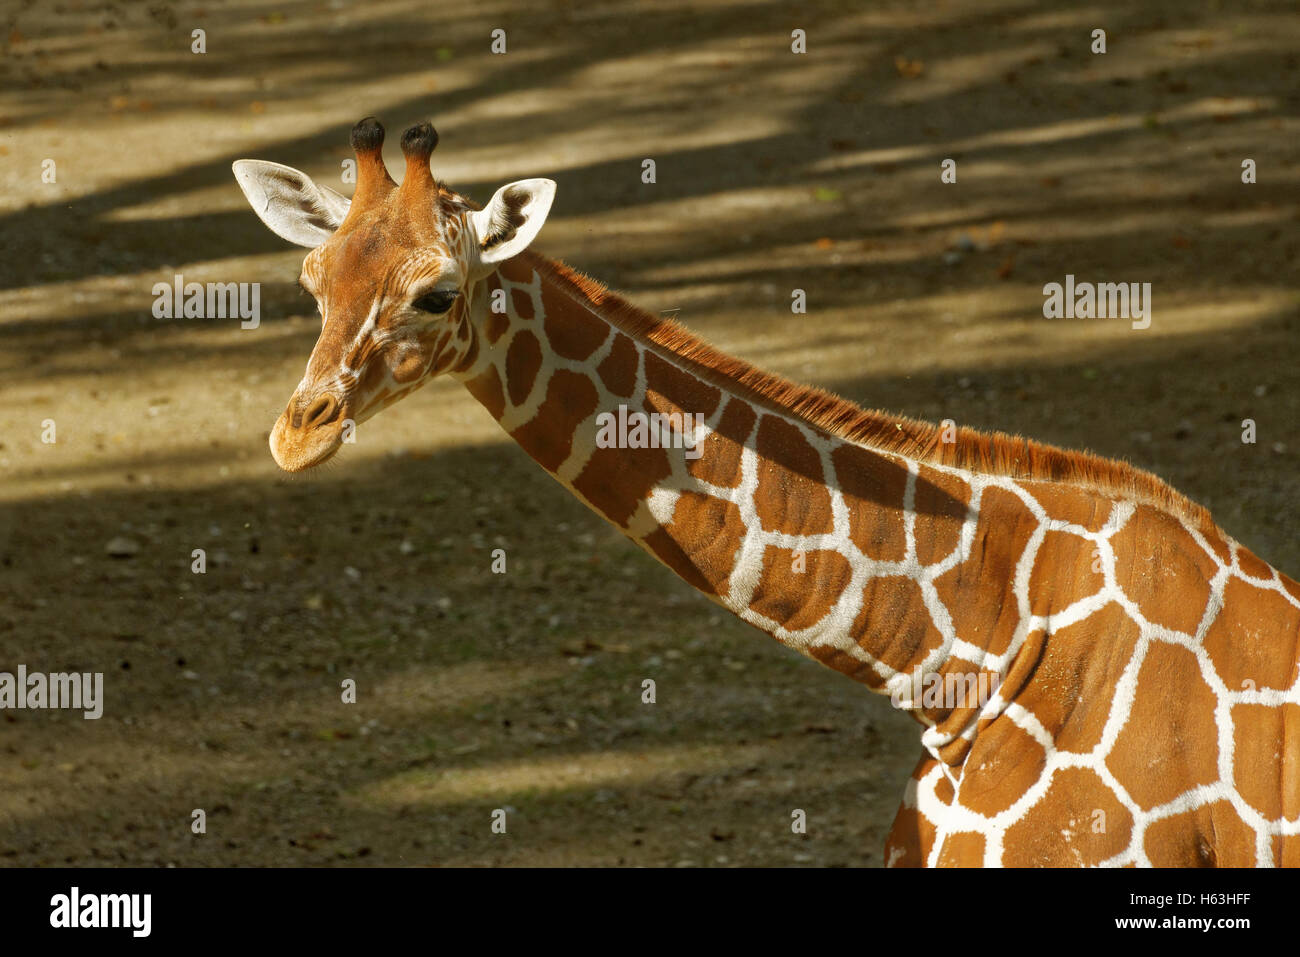 Jirafa (Giraffa camelopardalis) es un africano más puntera de mamíferos ungulados vivos, el más alto y el más grande de los animales terrestres Foto de stock